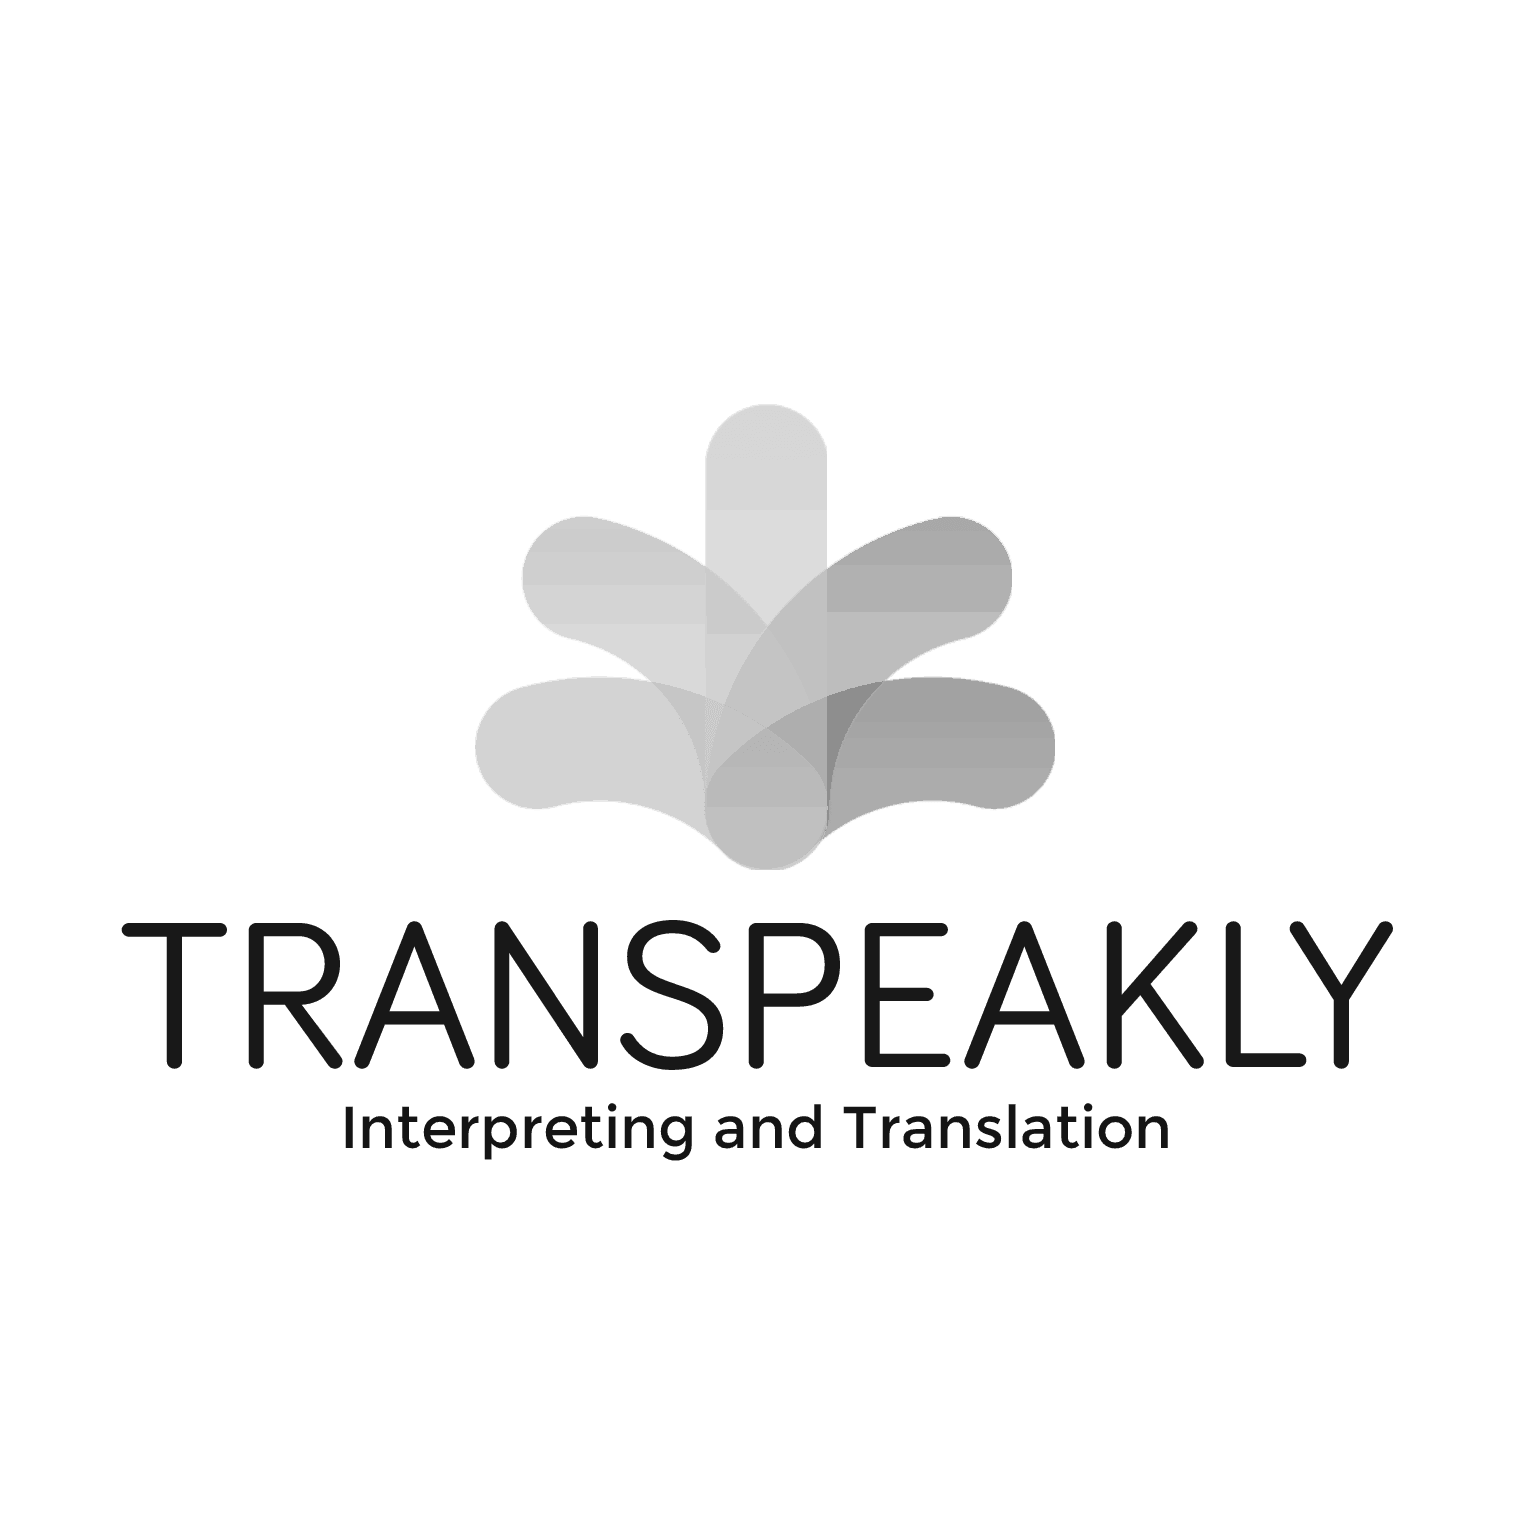 Transpeakly logo pic